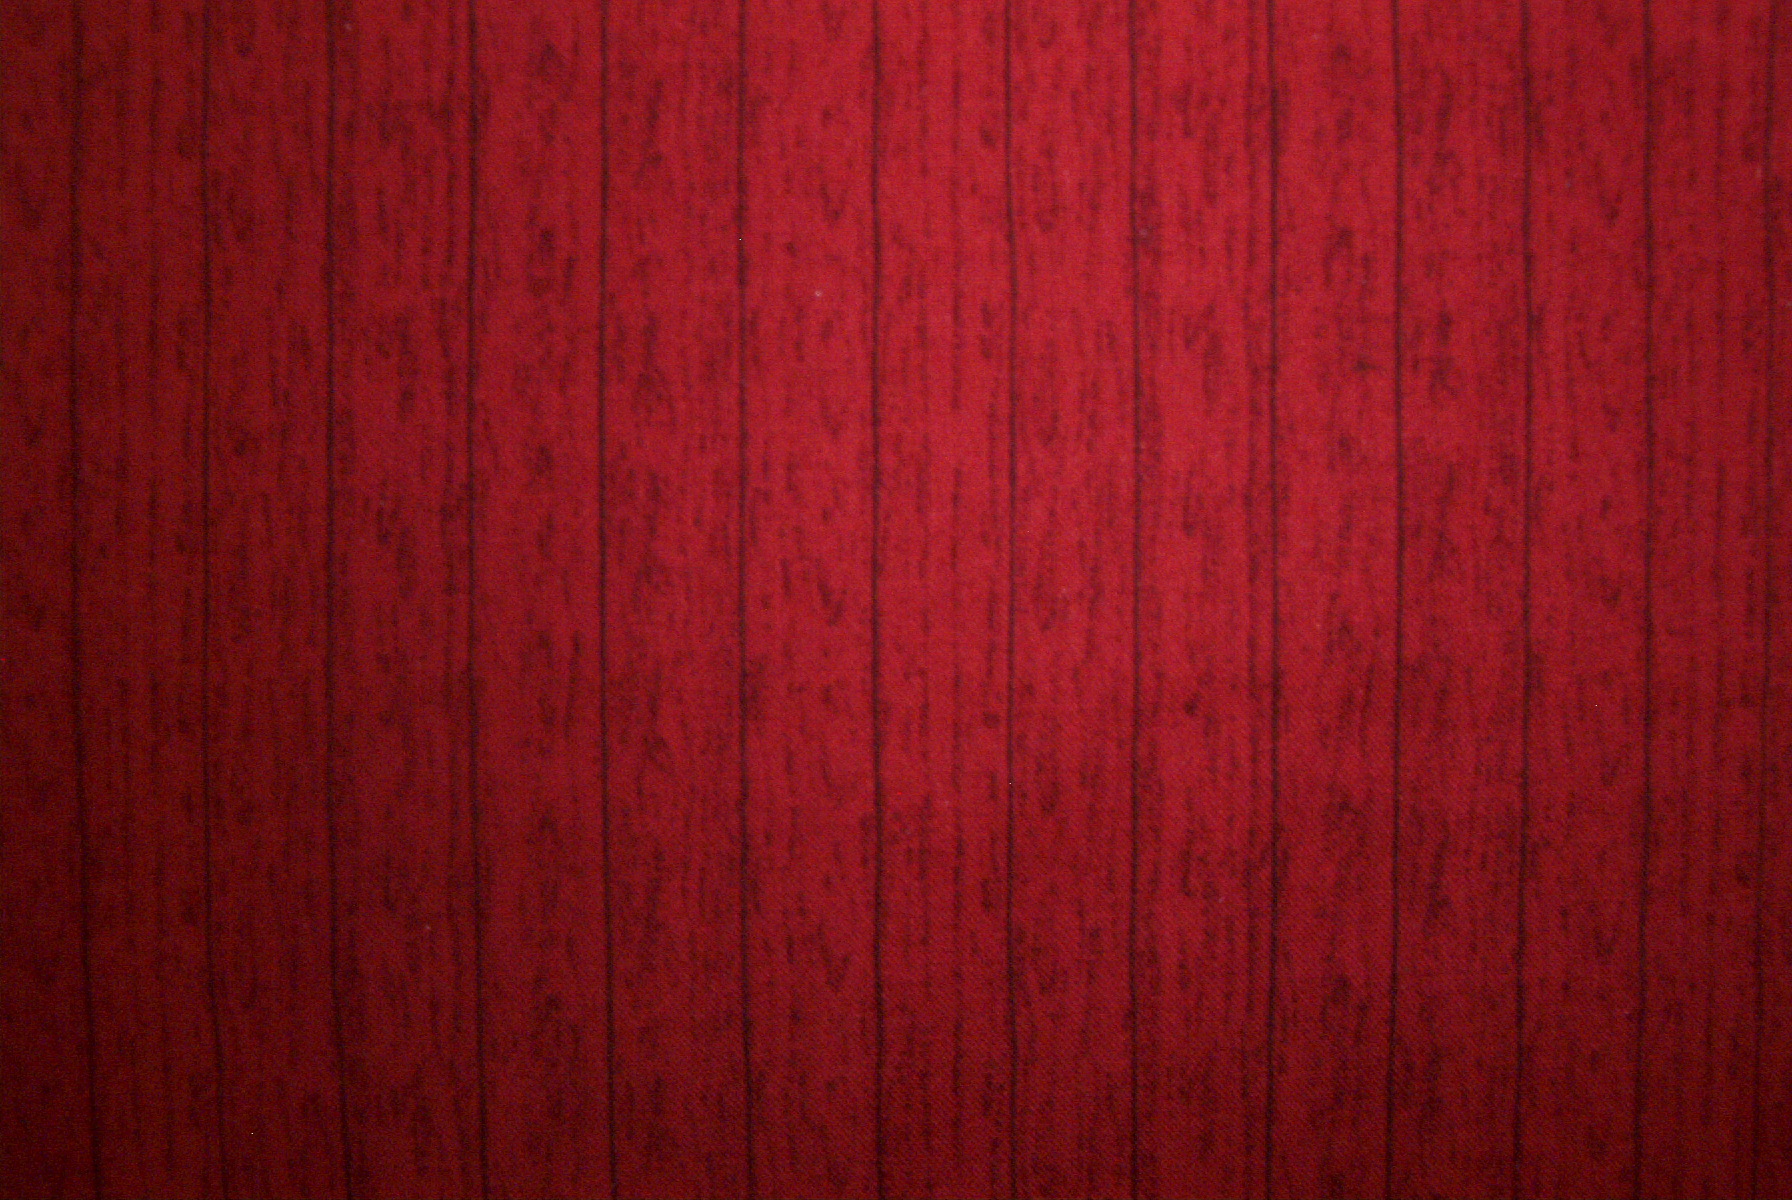 Giấy dán tường gỗ sch barn đỏ (Red barn wood wallpaper): Giấy dán tường gỗ sch barn đỏ sẽ tạo ra một không gian ấm áp và thân thiện với thiên nhiên. Hãy xem hình ảnh để cảm nhận được sự ấn tượng của sản phẩm này.